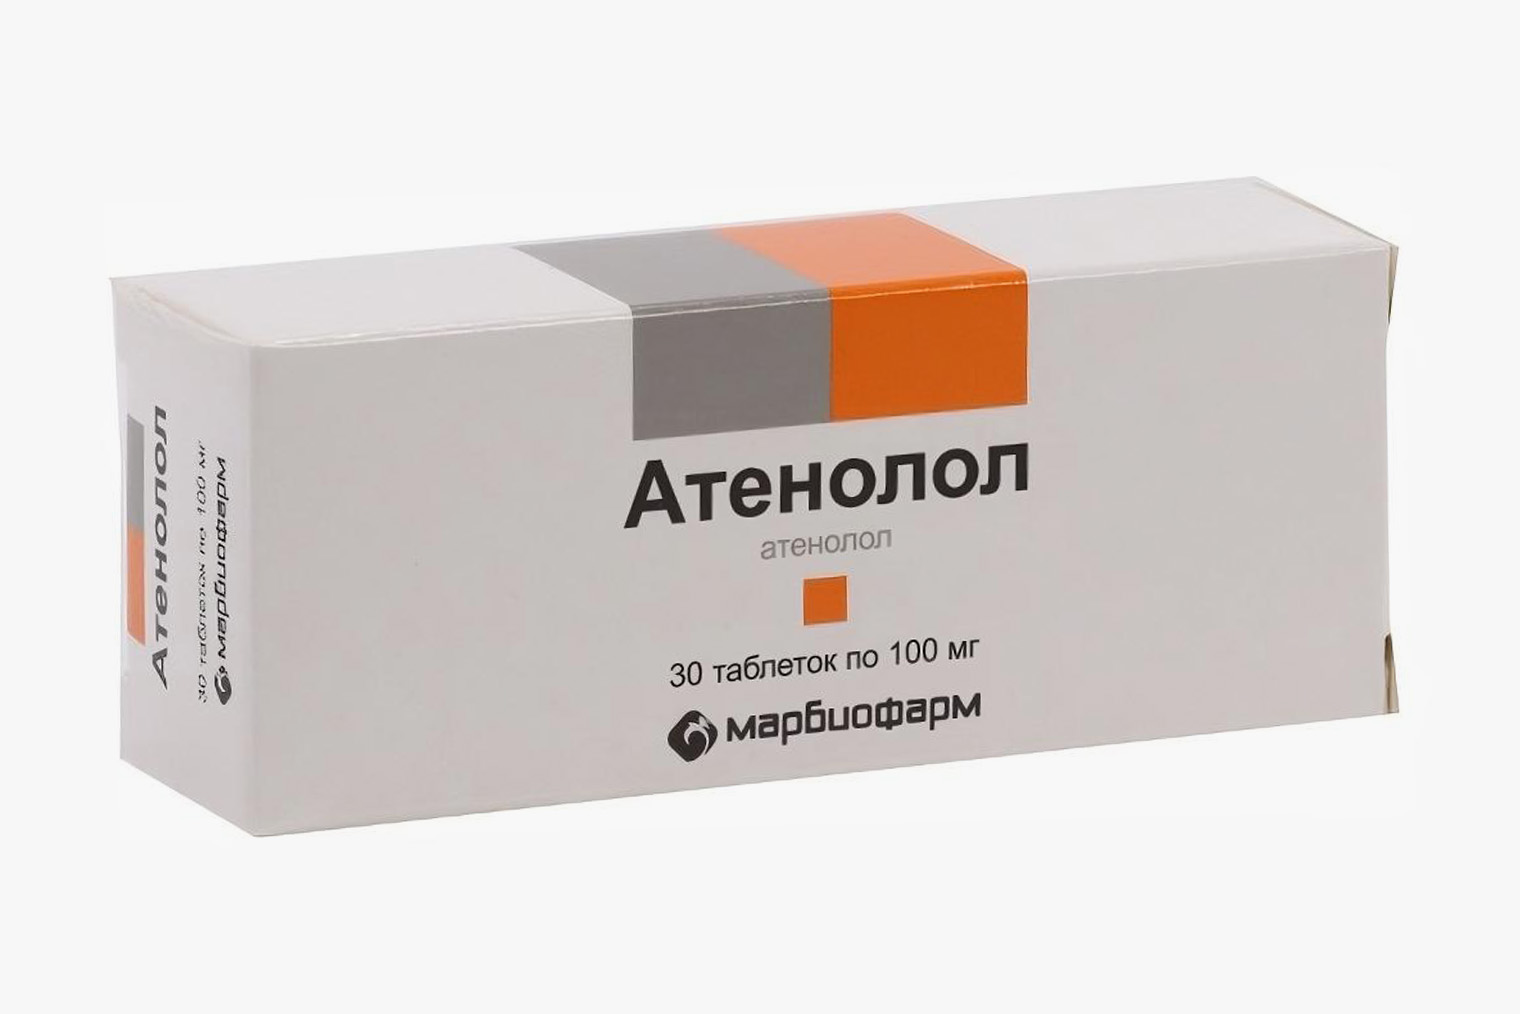 Стоимость 30 таблеток атенолола в дозировке 100 мг начинается от 37 ₽